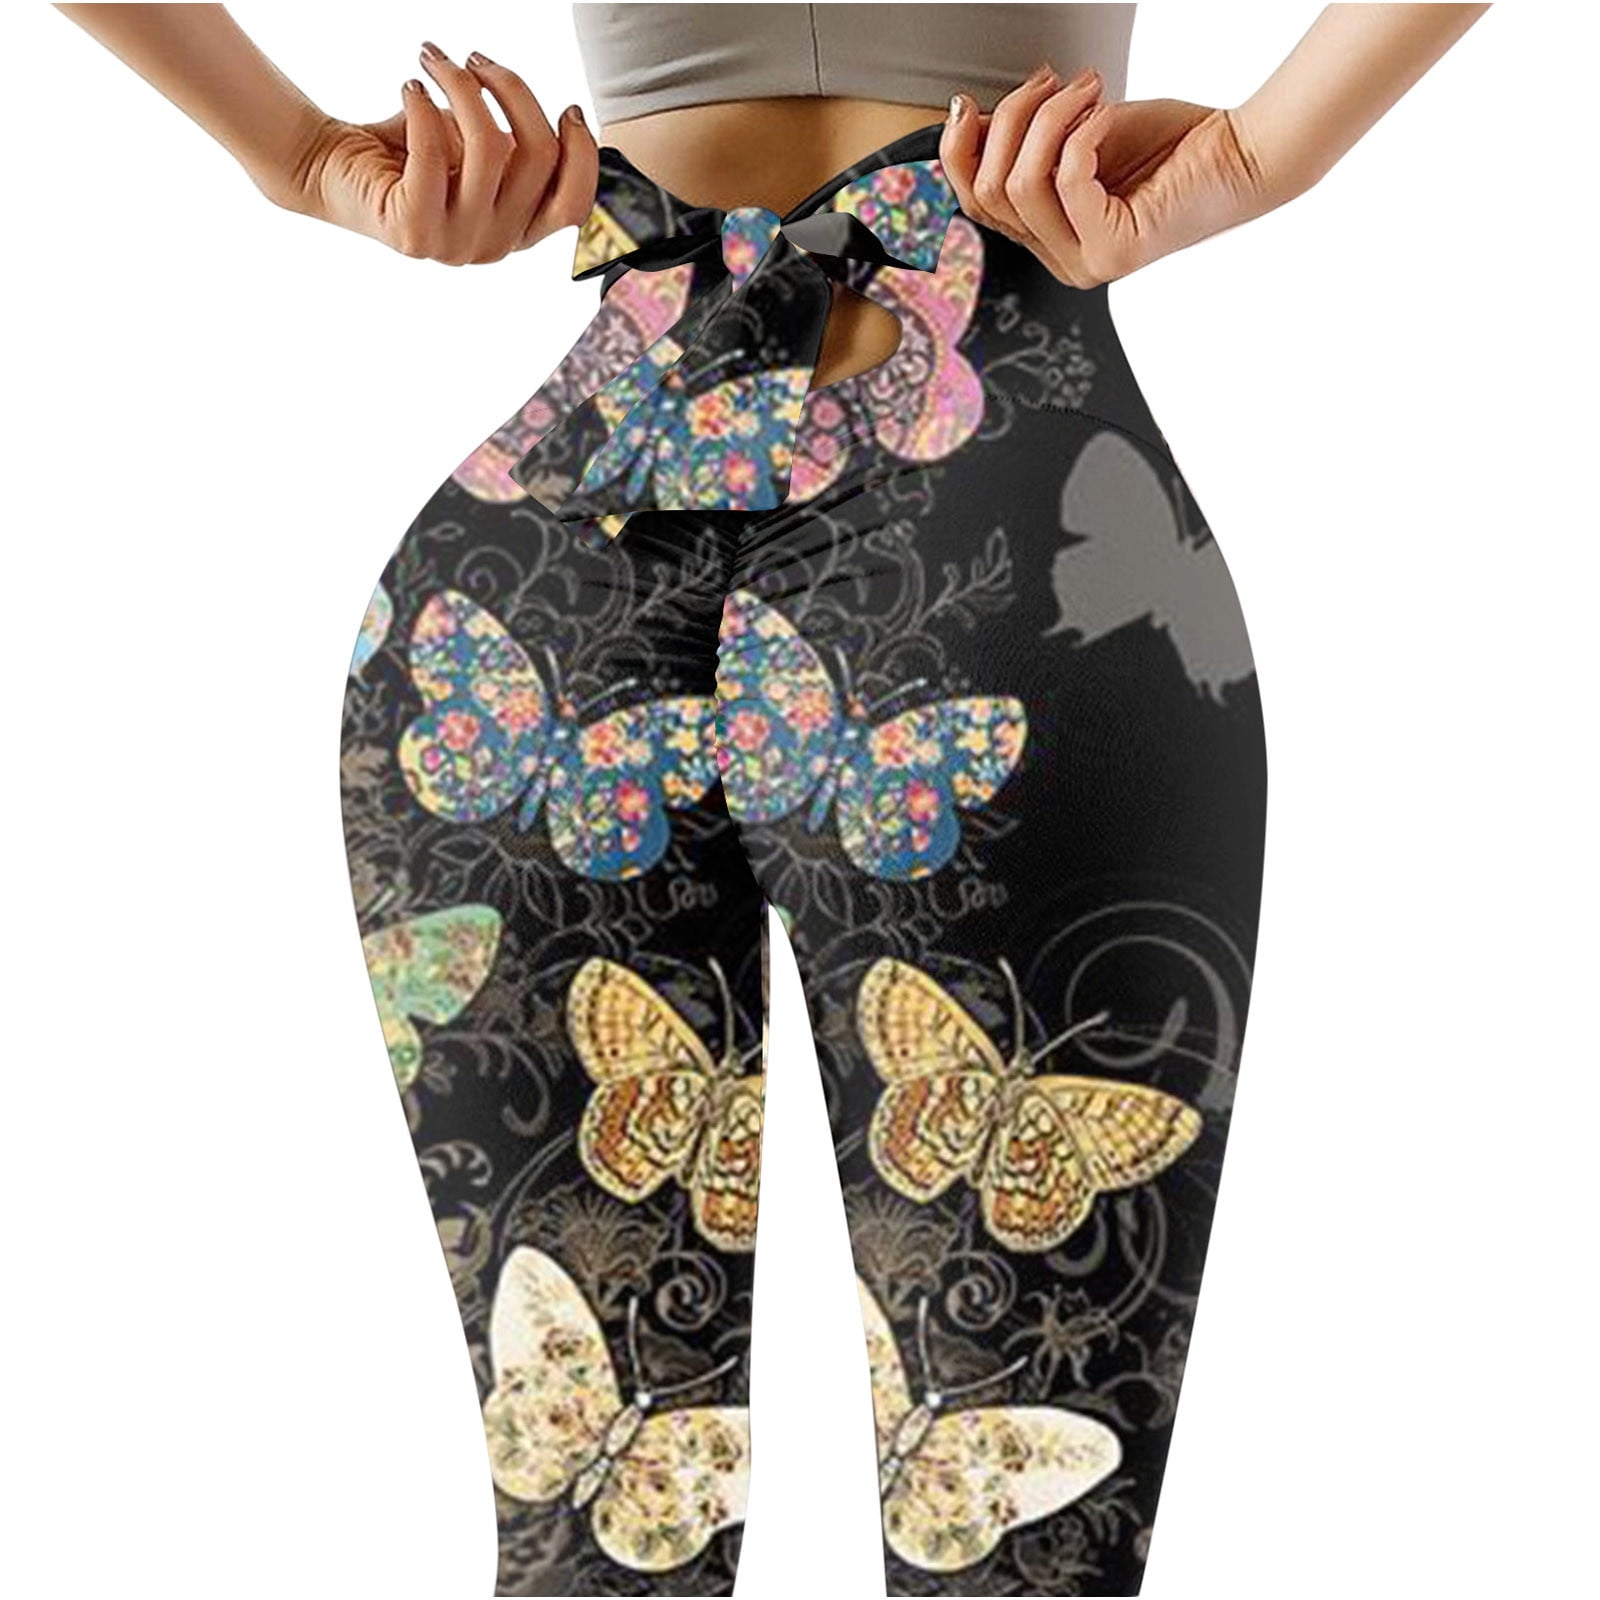 Leggings size medium womens highwaisted scrunch bum Women's bow butterfly  new